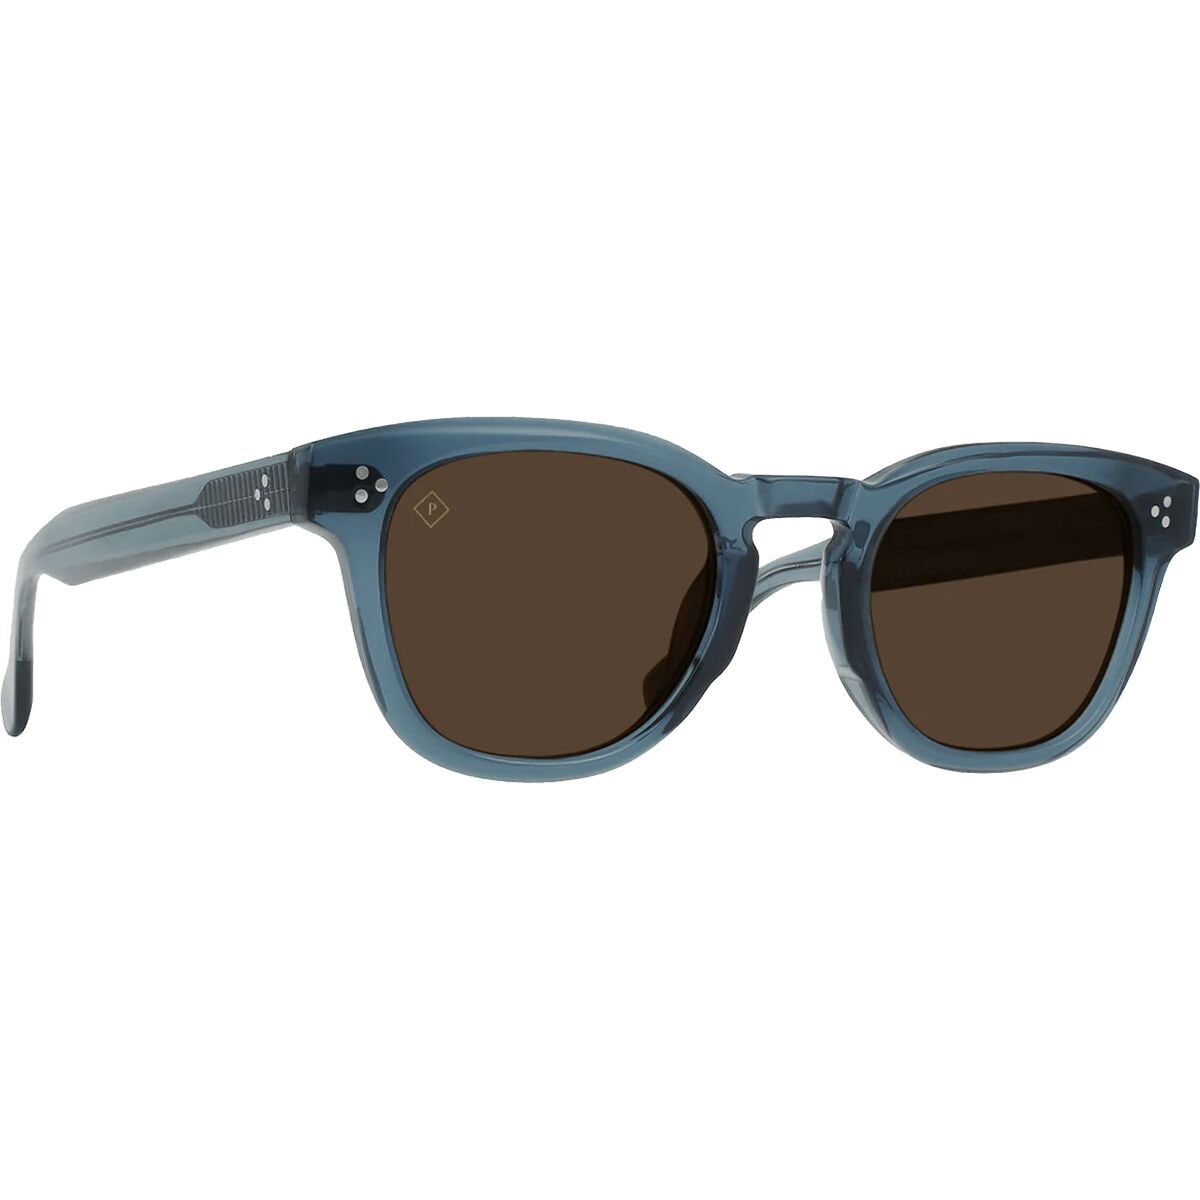 RAEN optics Squire Polarized Sunglasses